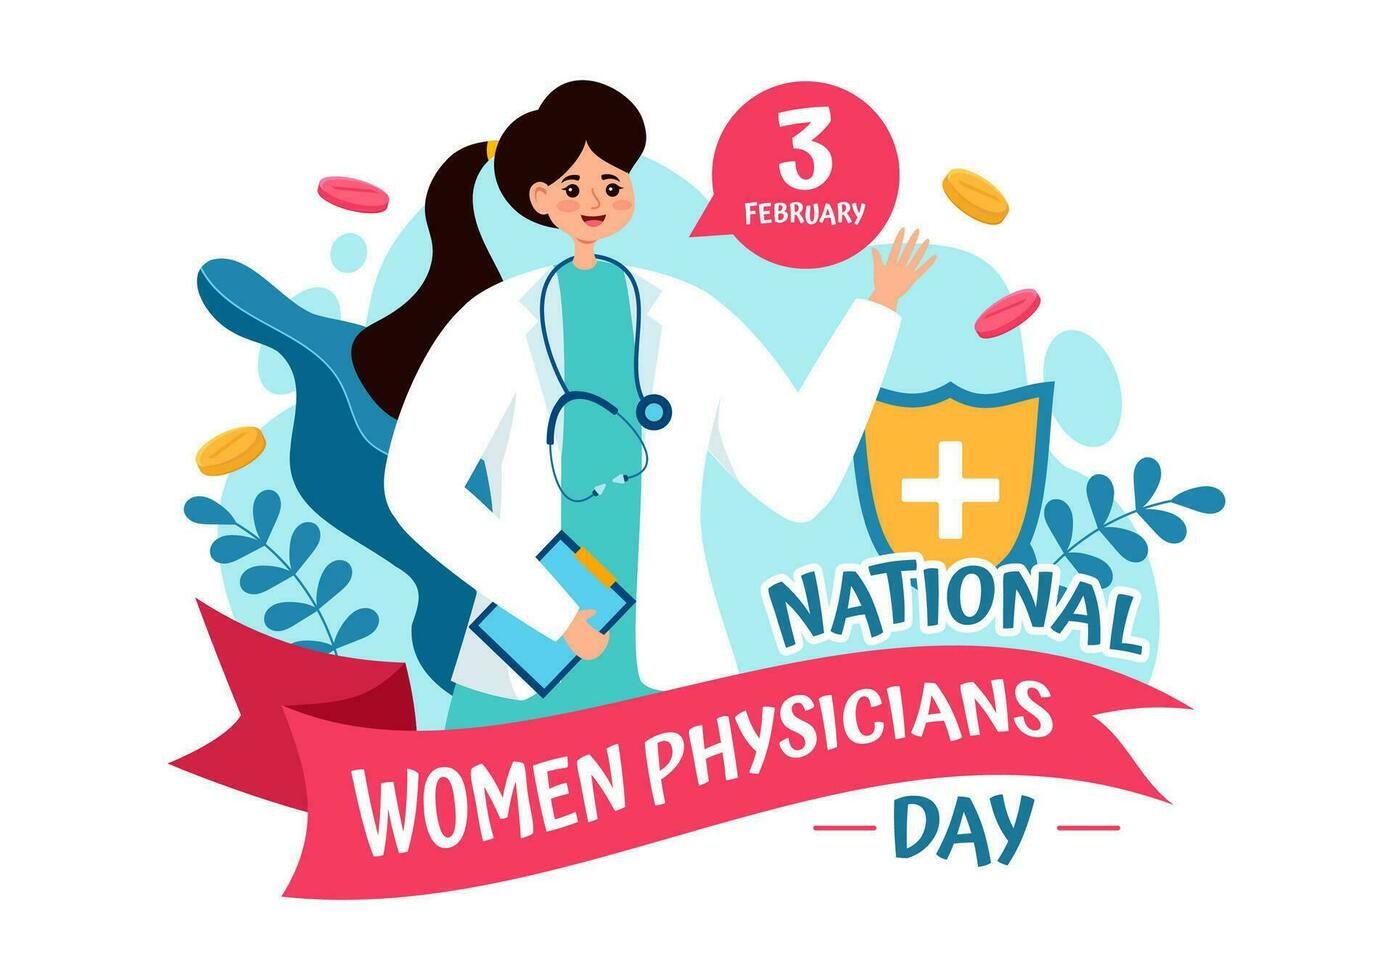 nationell kvinnor physicians dag vektor illustration på februari 3 till hedra kvinna doktorer tvärs över de Land i platt tecknad serie bakgrund design